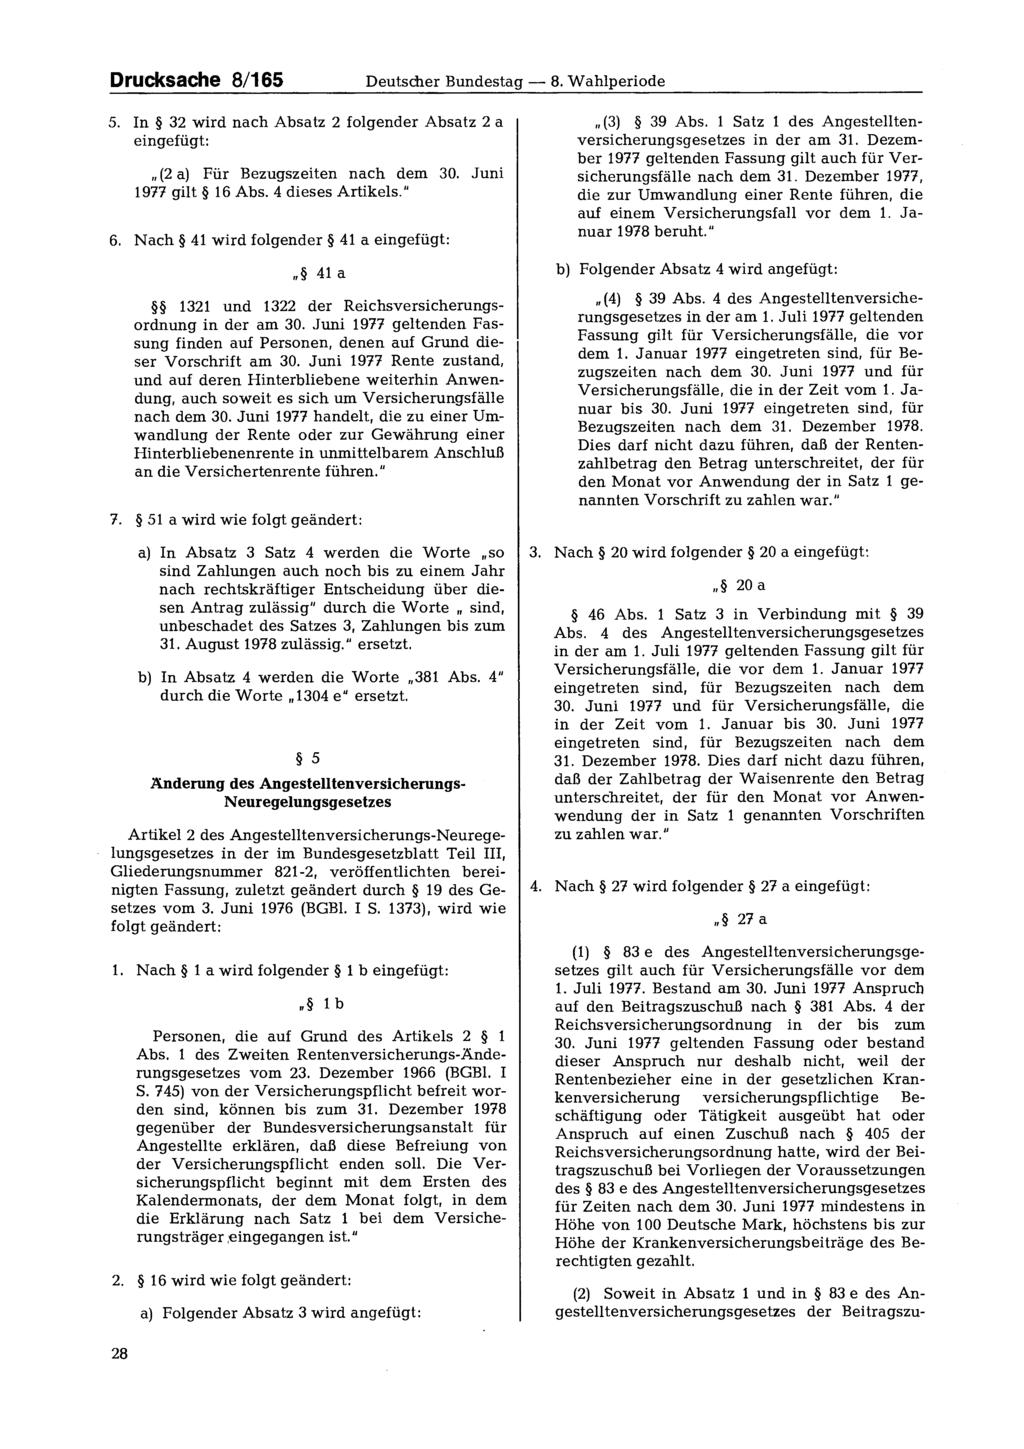 Drucksache 8/1655 Deutscher Bundestag - 8. Wahlperiode 5. In 32 wird nach Absatz 2 folgender Absatz 2 a eingefügt: (2 a) Für Bezugszeiten nach dem 30. Juni 1977 gilt 16 Abs. 4 dieses Artikels." 6.